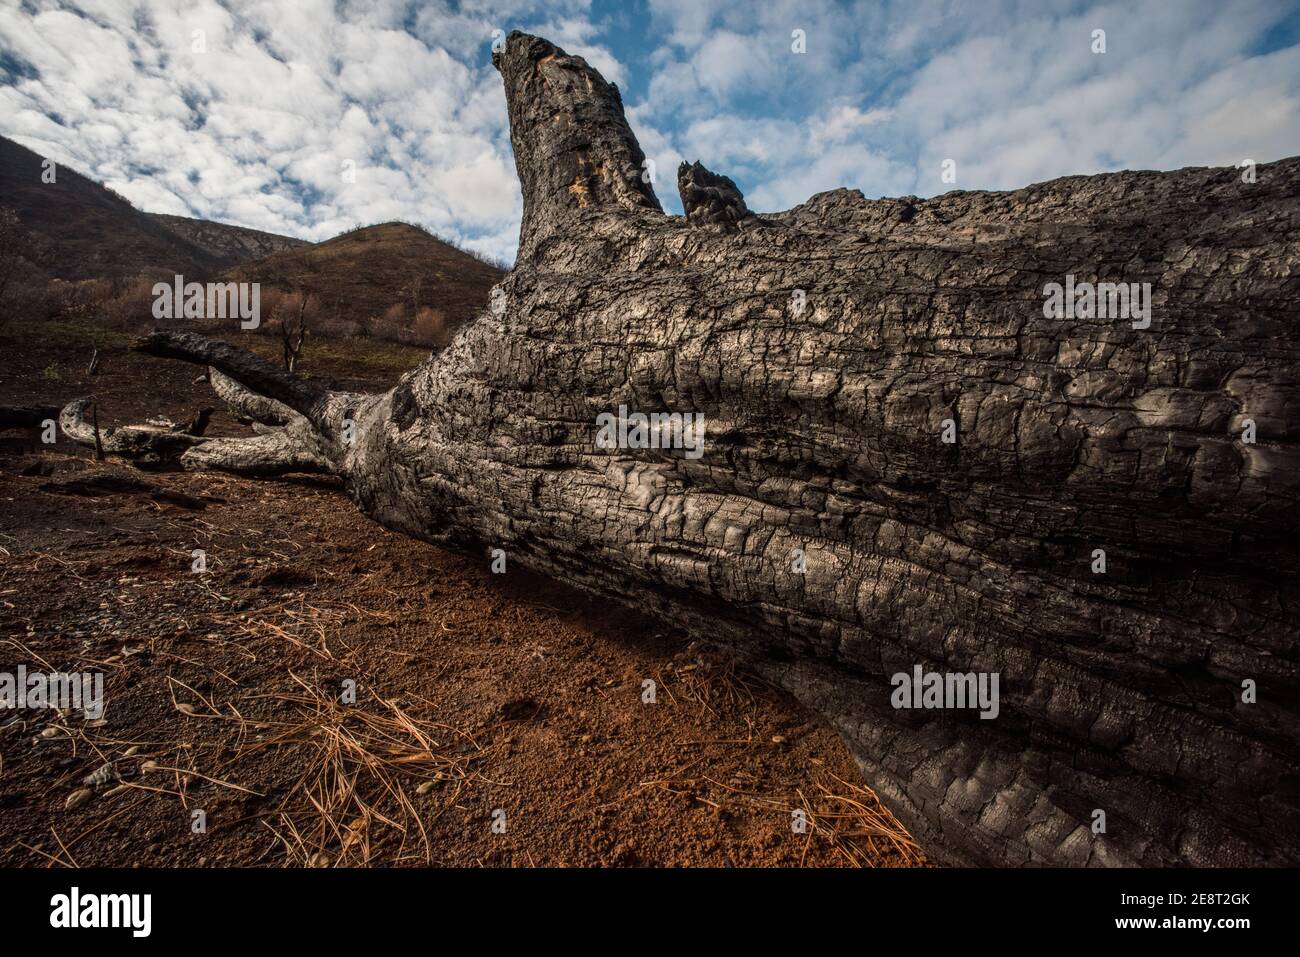 Nella California del Nord un tronco di albero bruciato e arato rimane dopo un fuoco selvatico spazzato attraverso il paesaggio bruciando via e uccidendo la maggior parte della vegetazione. Foto Stock